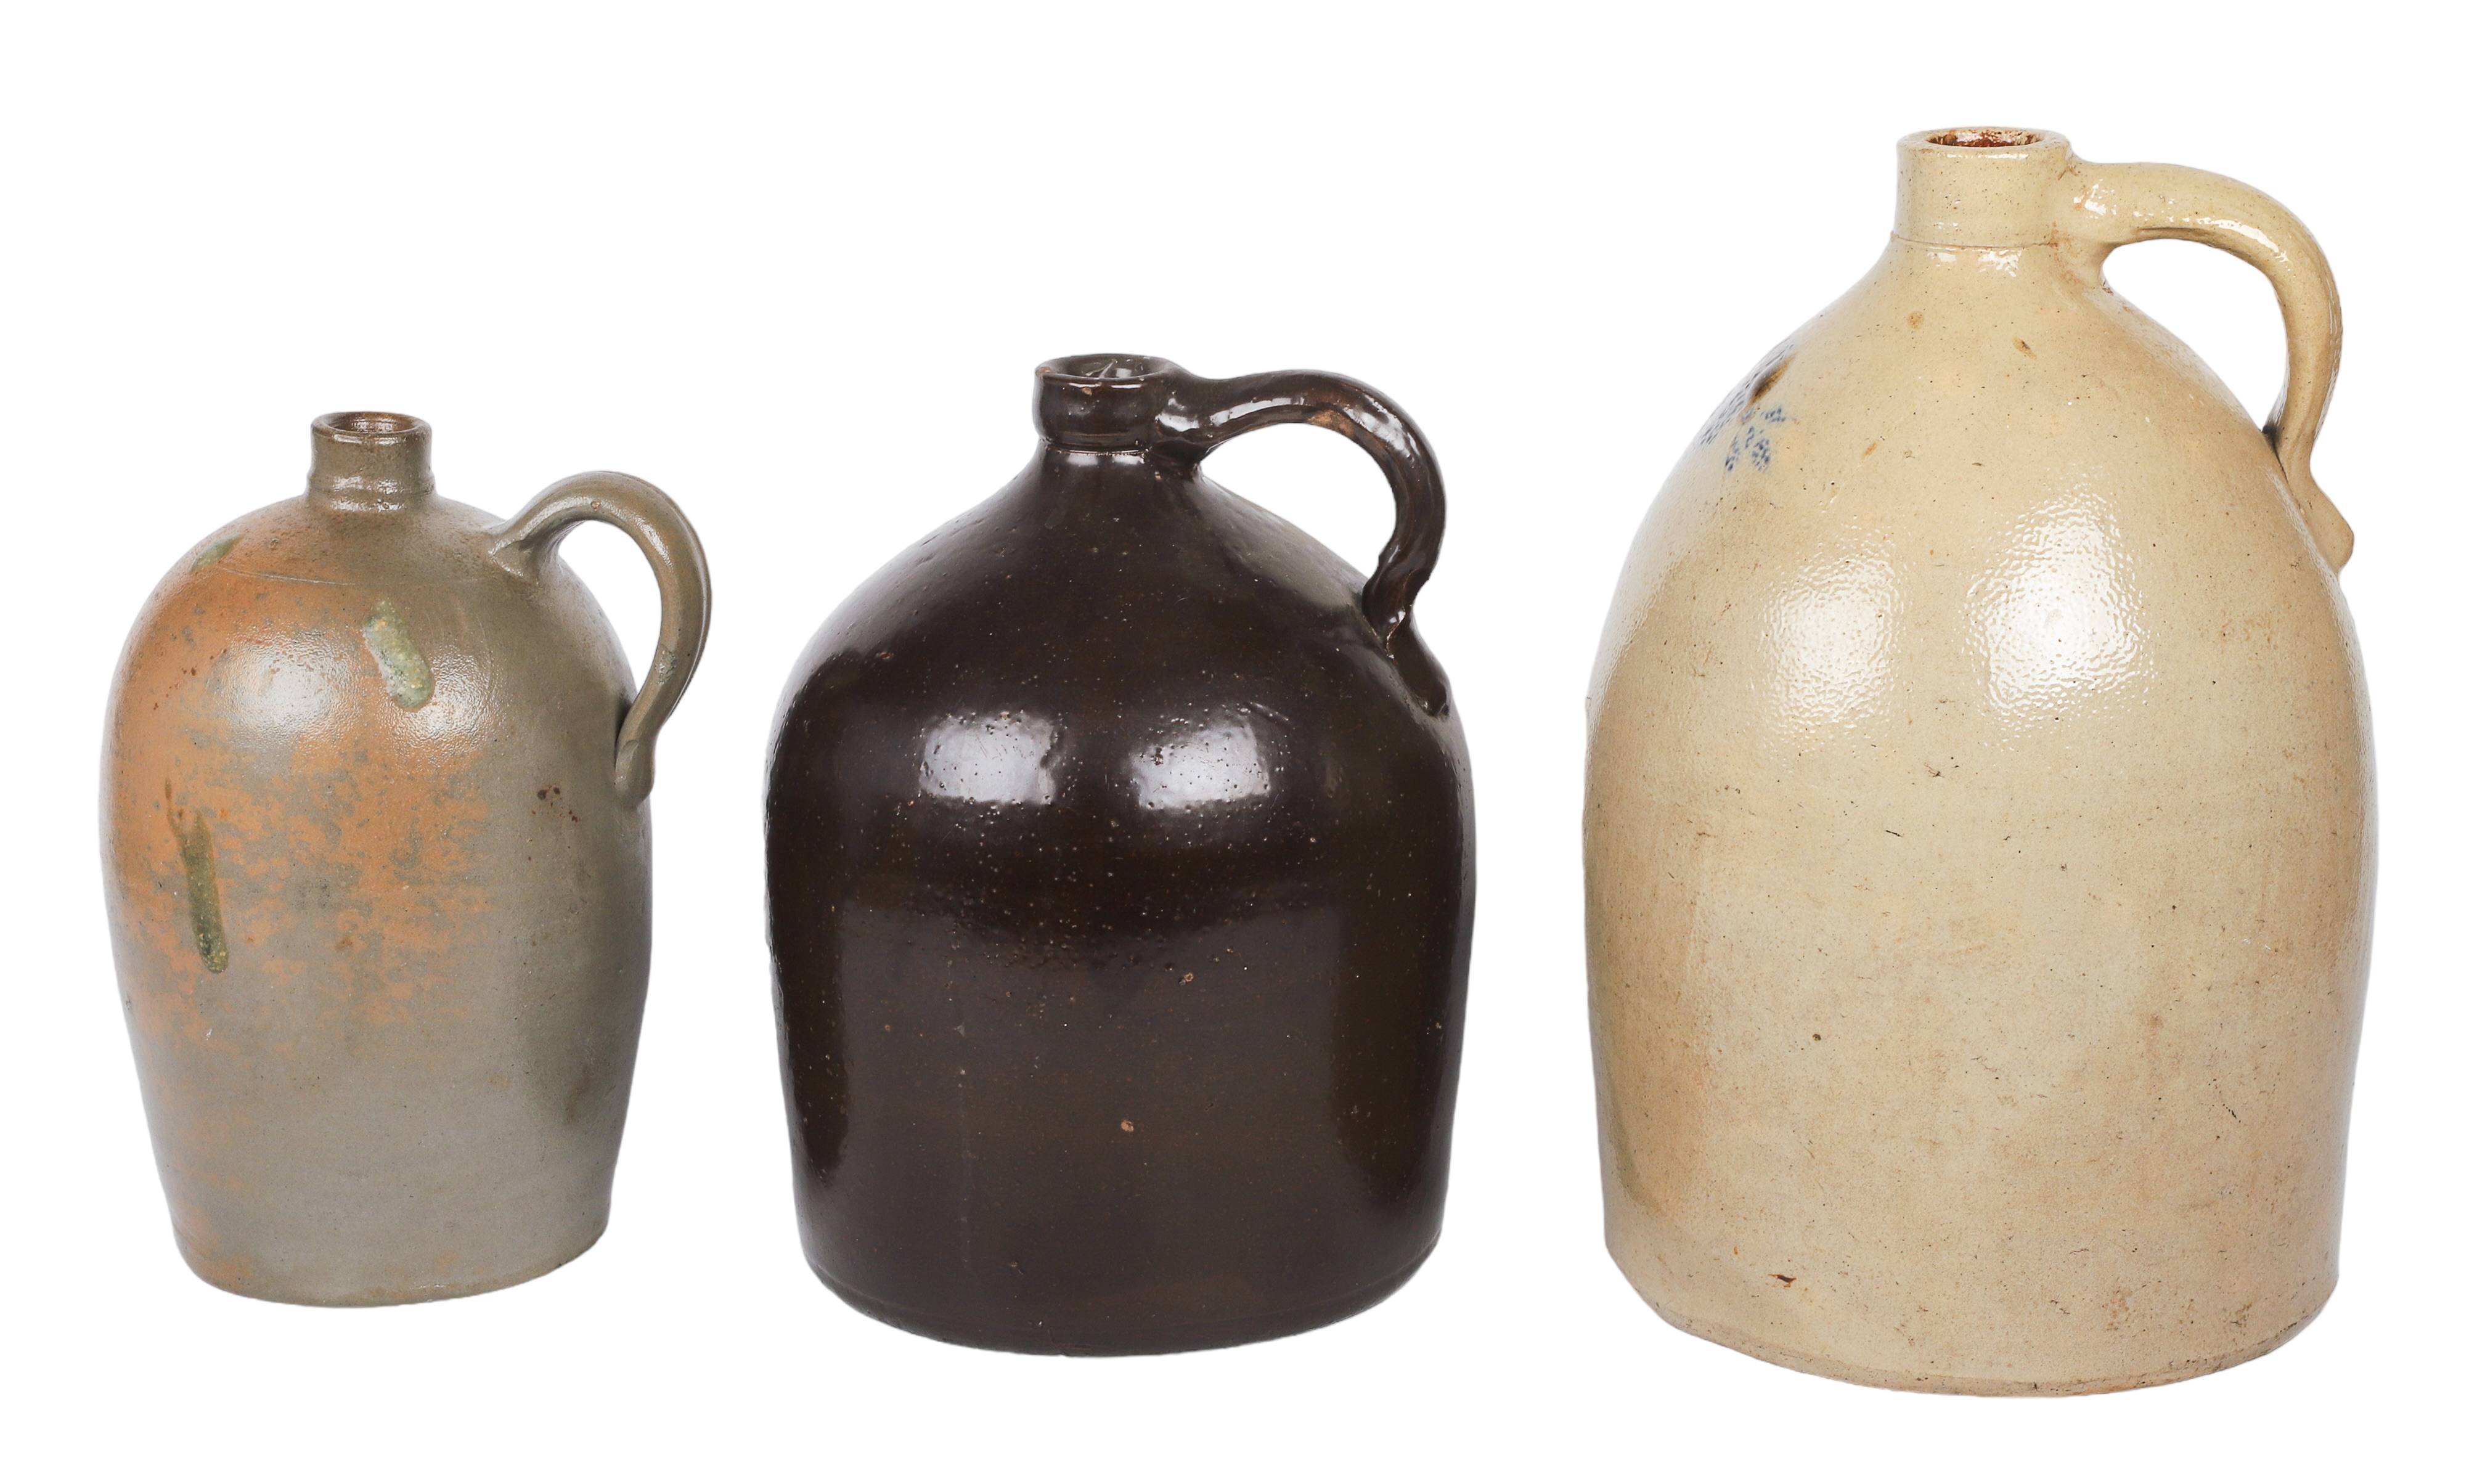  3 Stoneware jugs c o 3 gallon 2e2478